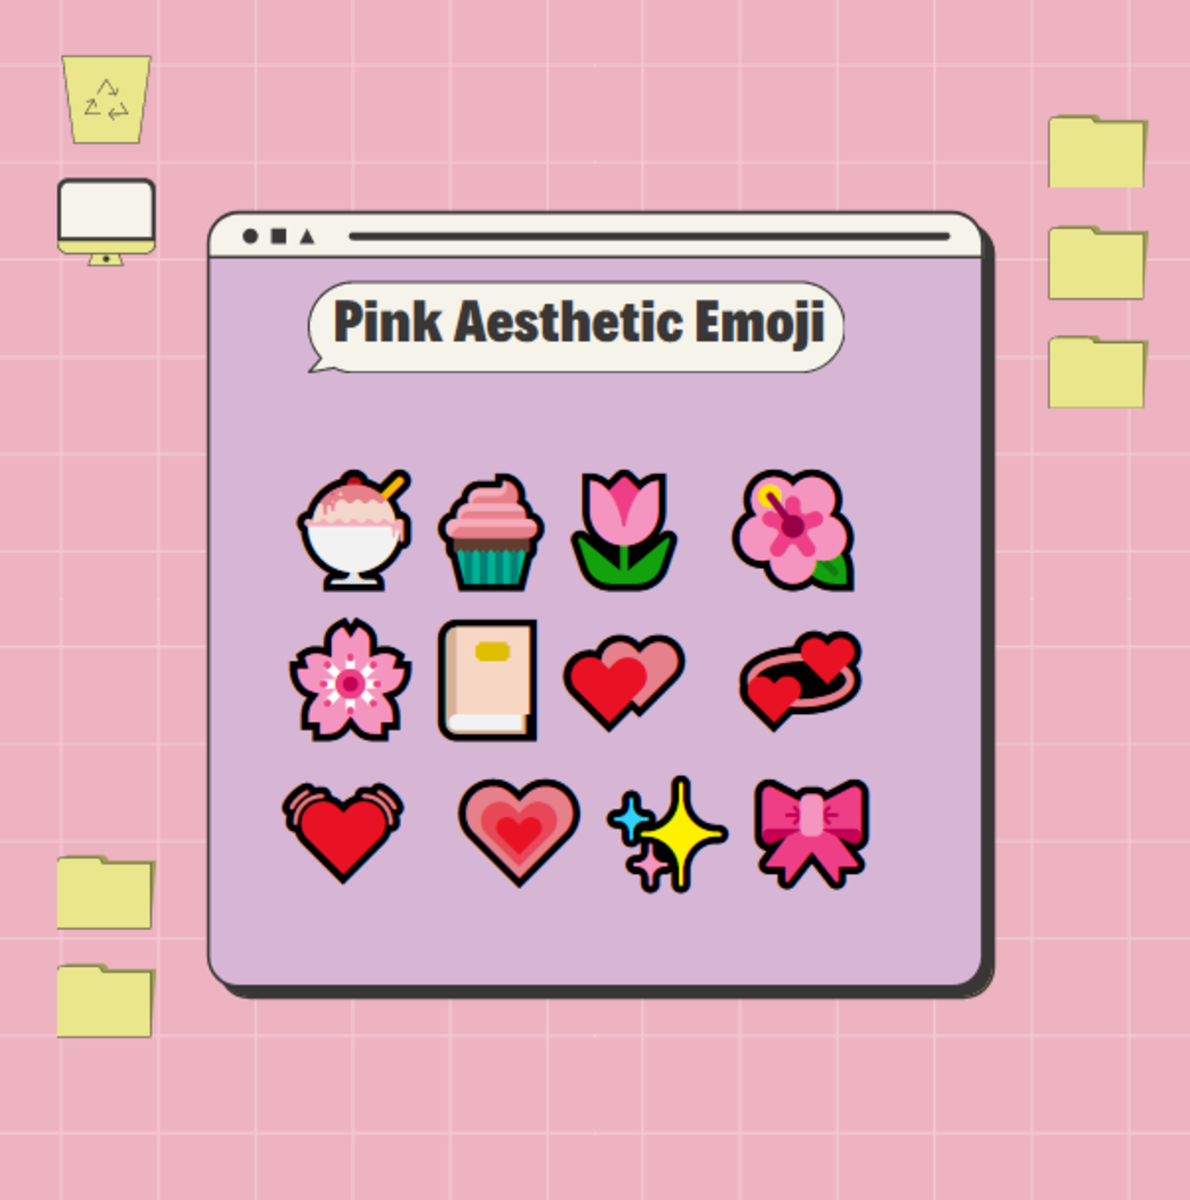 这里有一些超级可爱的粉红色美学表情符号！